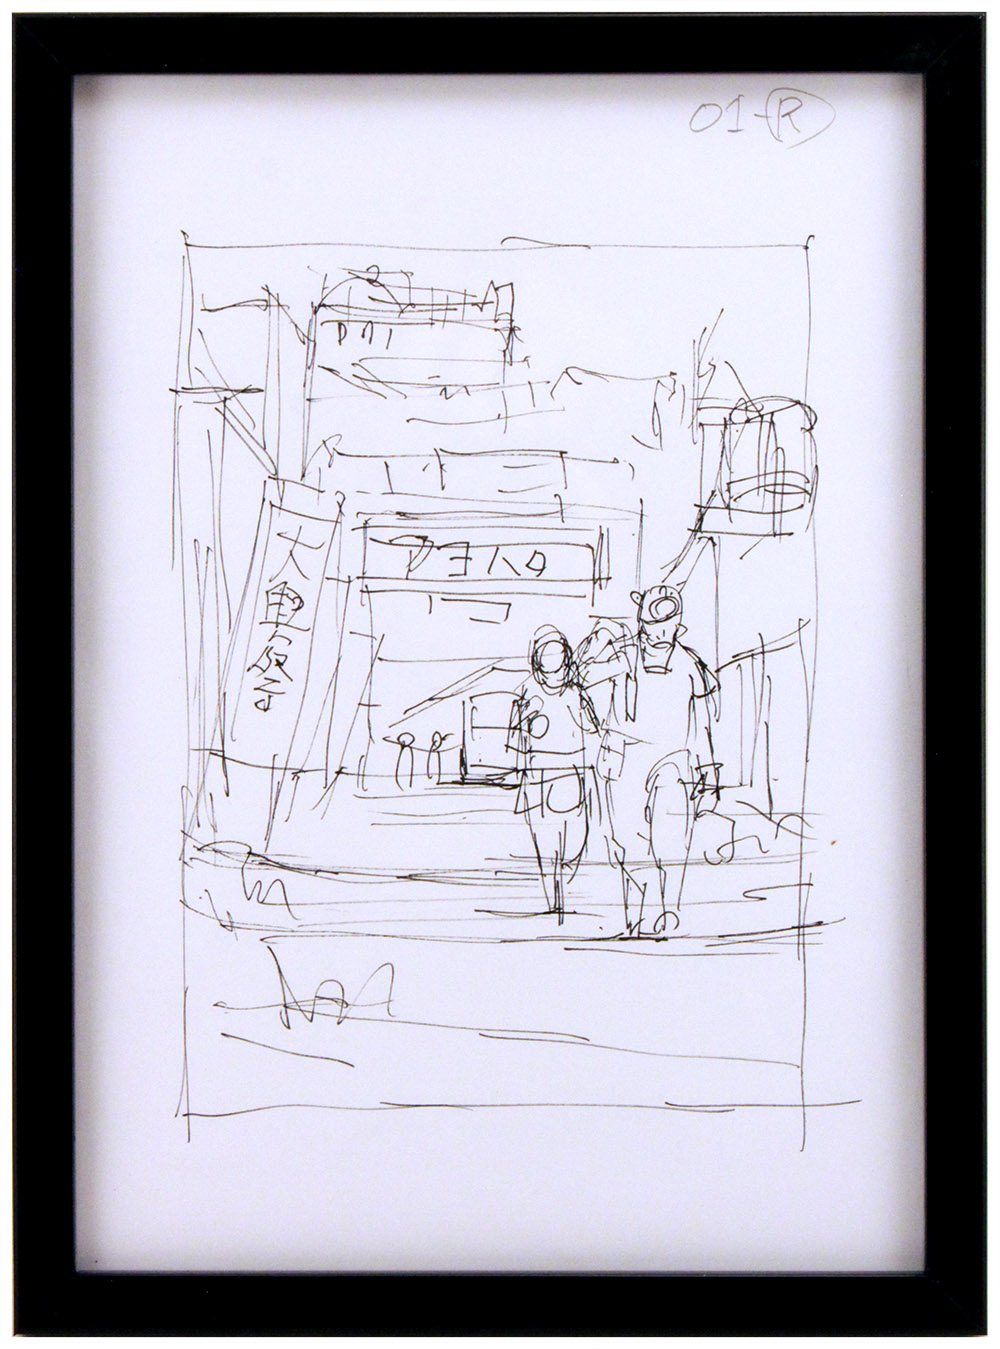 「アヨハタ市」(AYOHATA City) - Ink Sketch, Tatsuyuki Tanaka